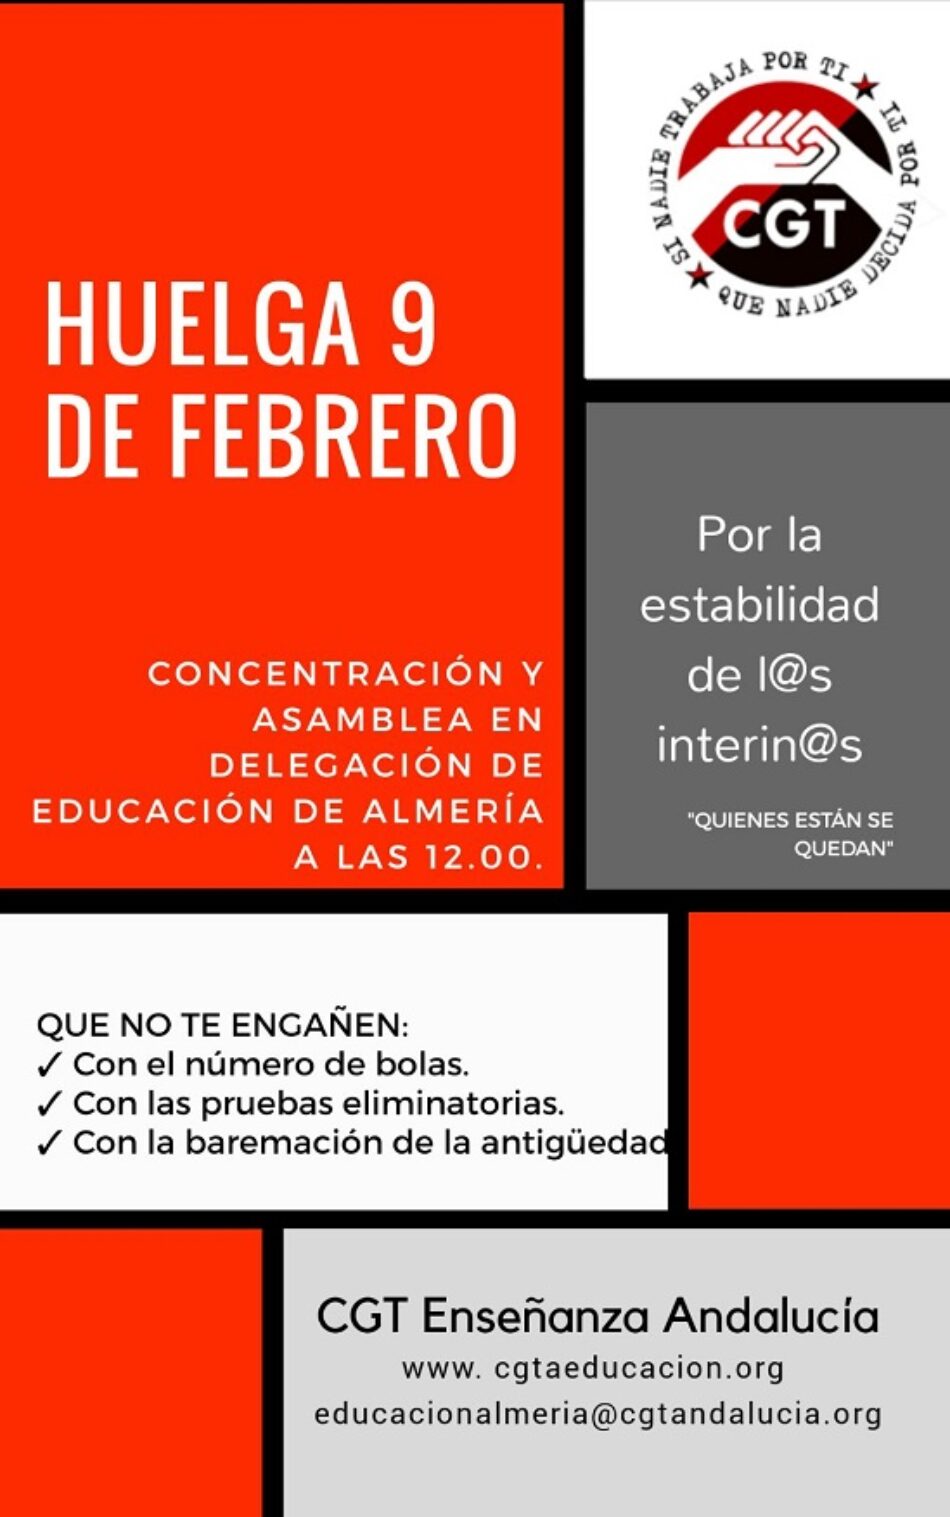 CGT convoca huelga en Educación en toda Andalucía por la estabilidad de los interinos